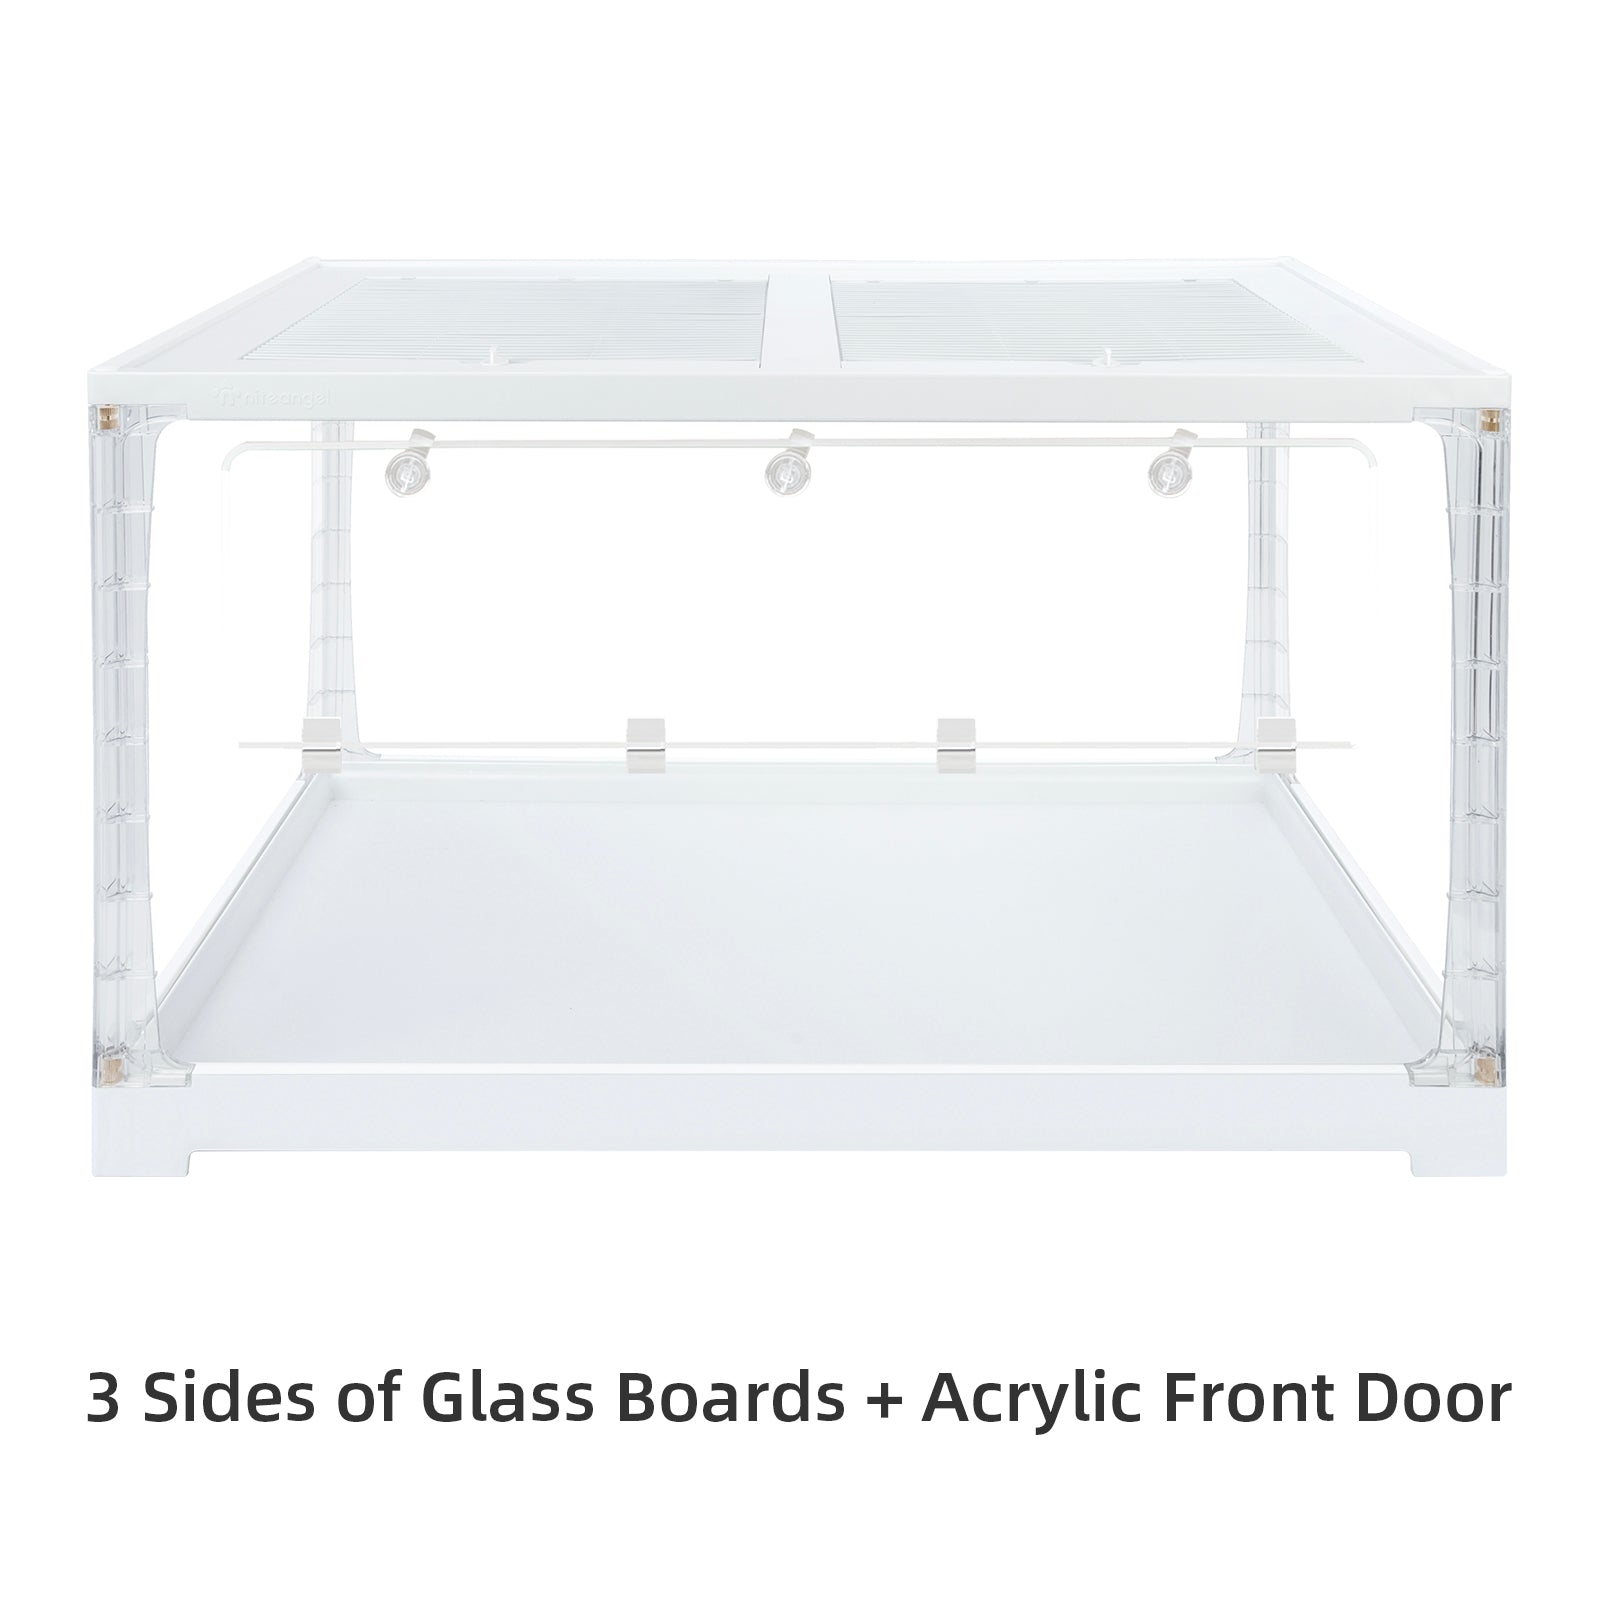 Niteangel Stacker Series Hamster Cage: - Stackable & Large Glass Terrarium - Niteangel Pet CA